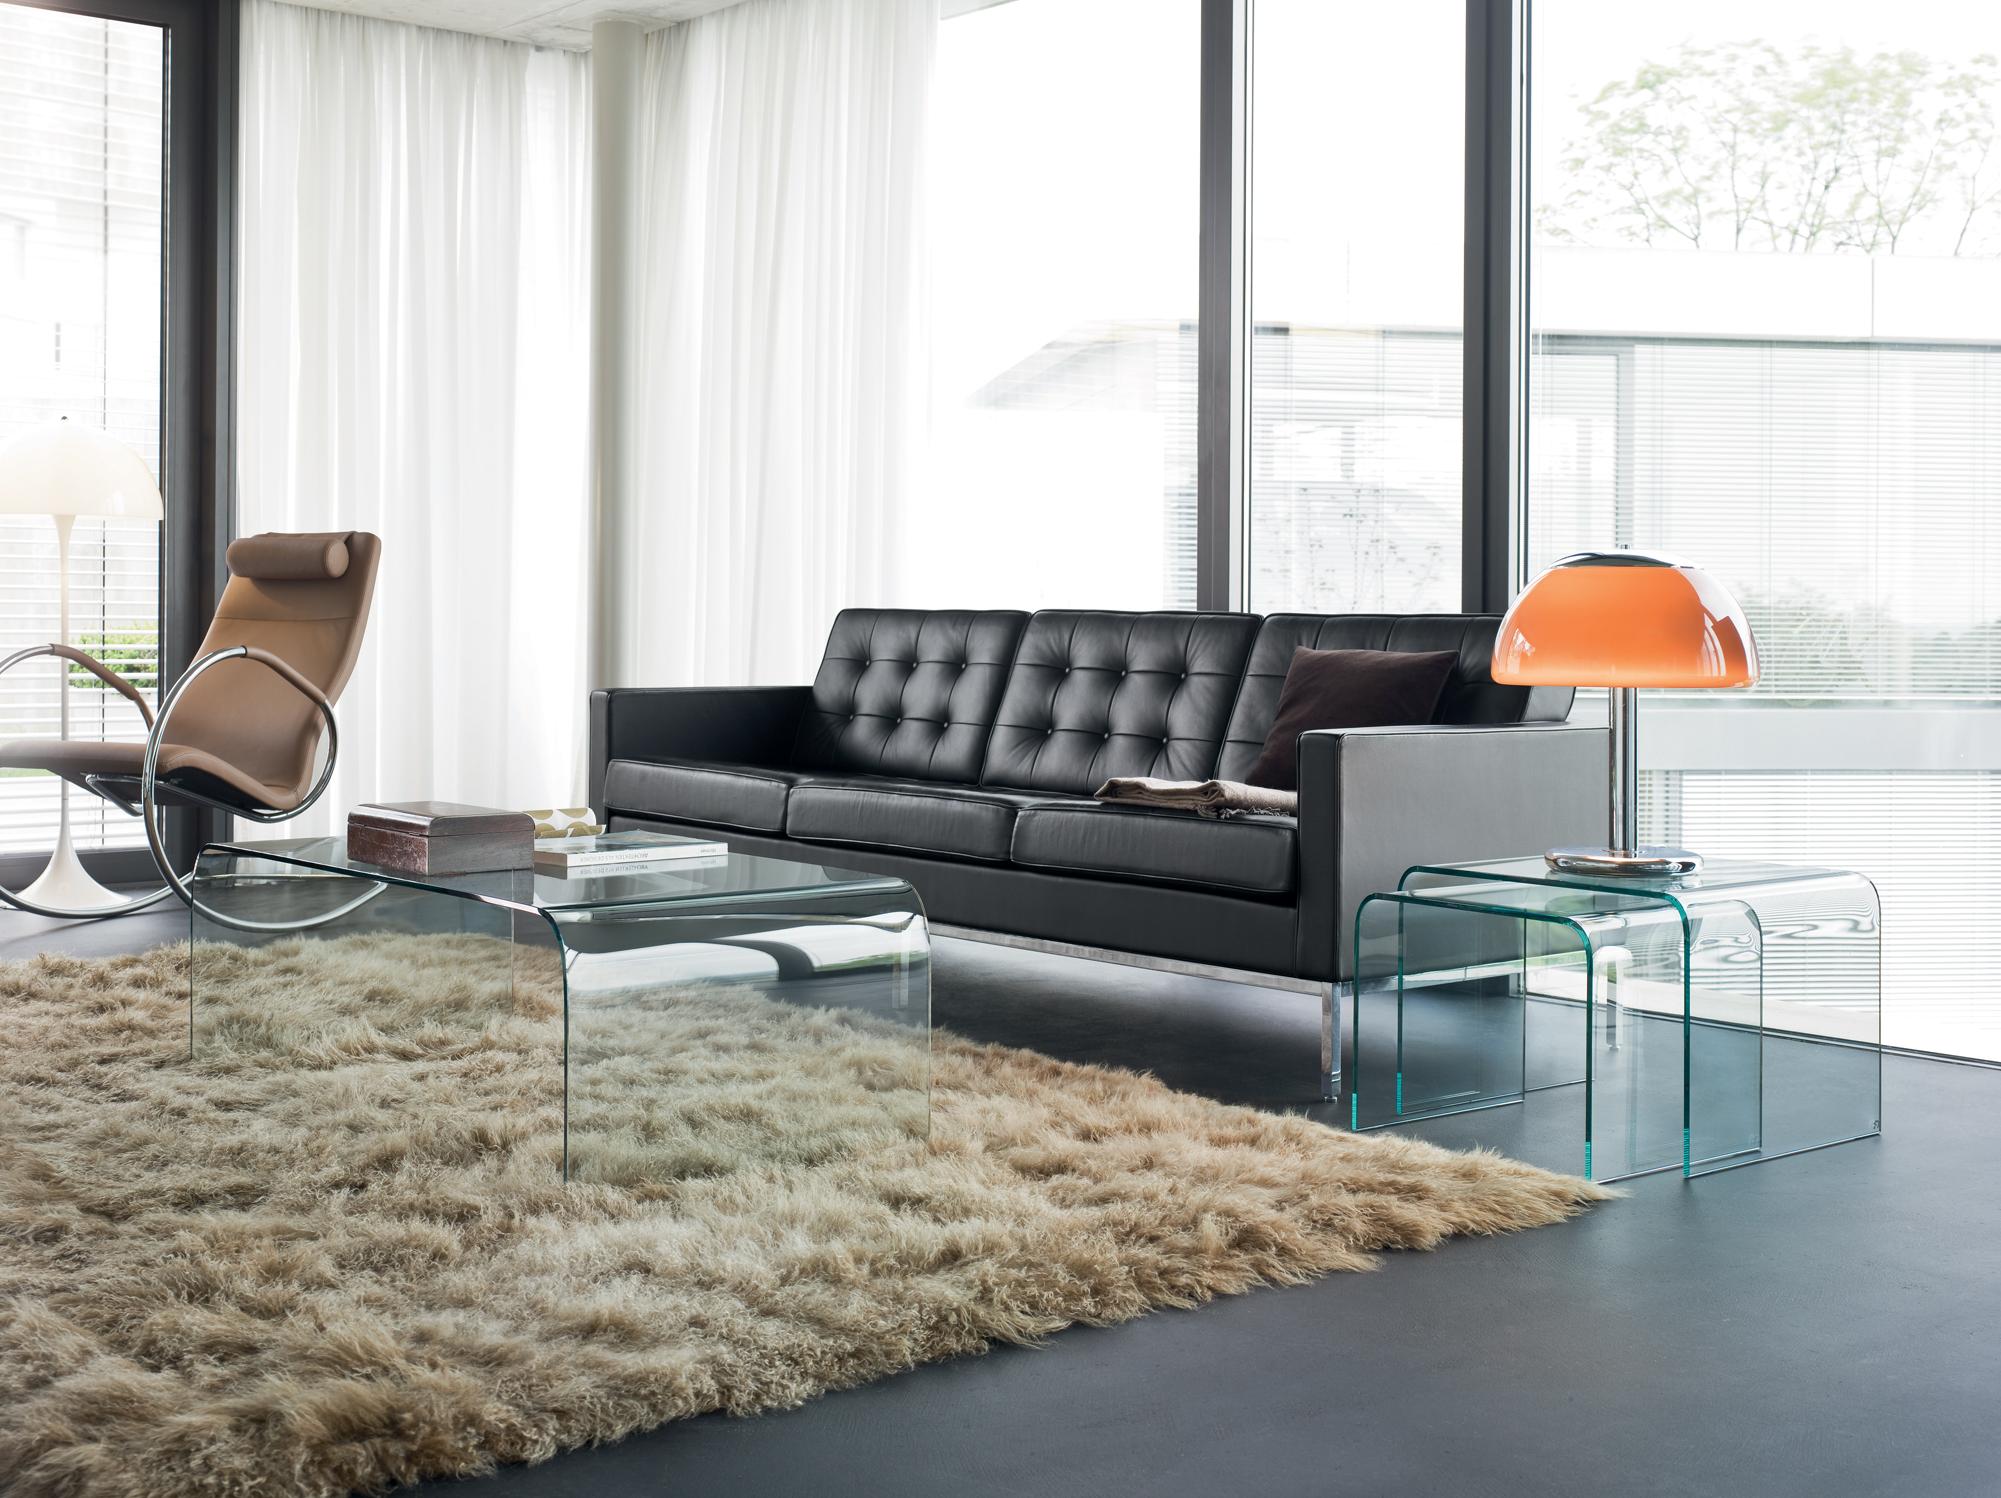 Zeitlose Möbel: Akzente durch Beistelltische aus Acrylglas #couchtisch #beistelltisch #teppich #wohnzimmer #ledersofa #schaukelstuhl #schwarzesledersofa ©DRAENERT